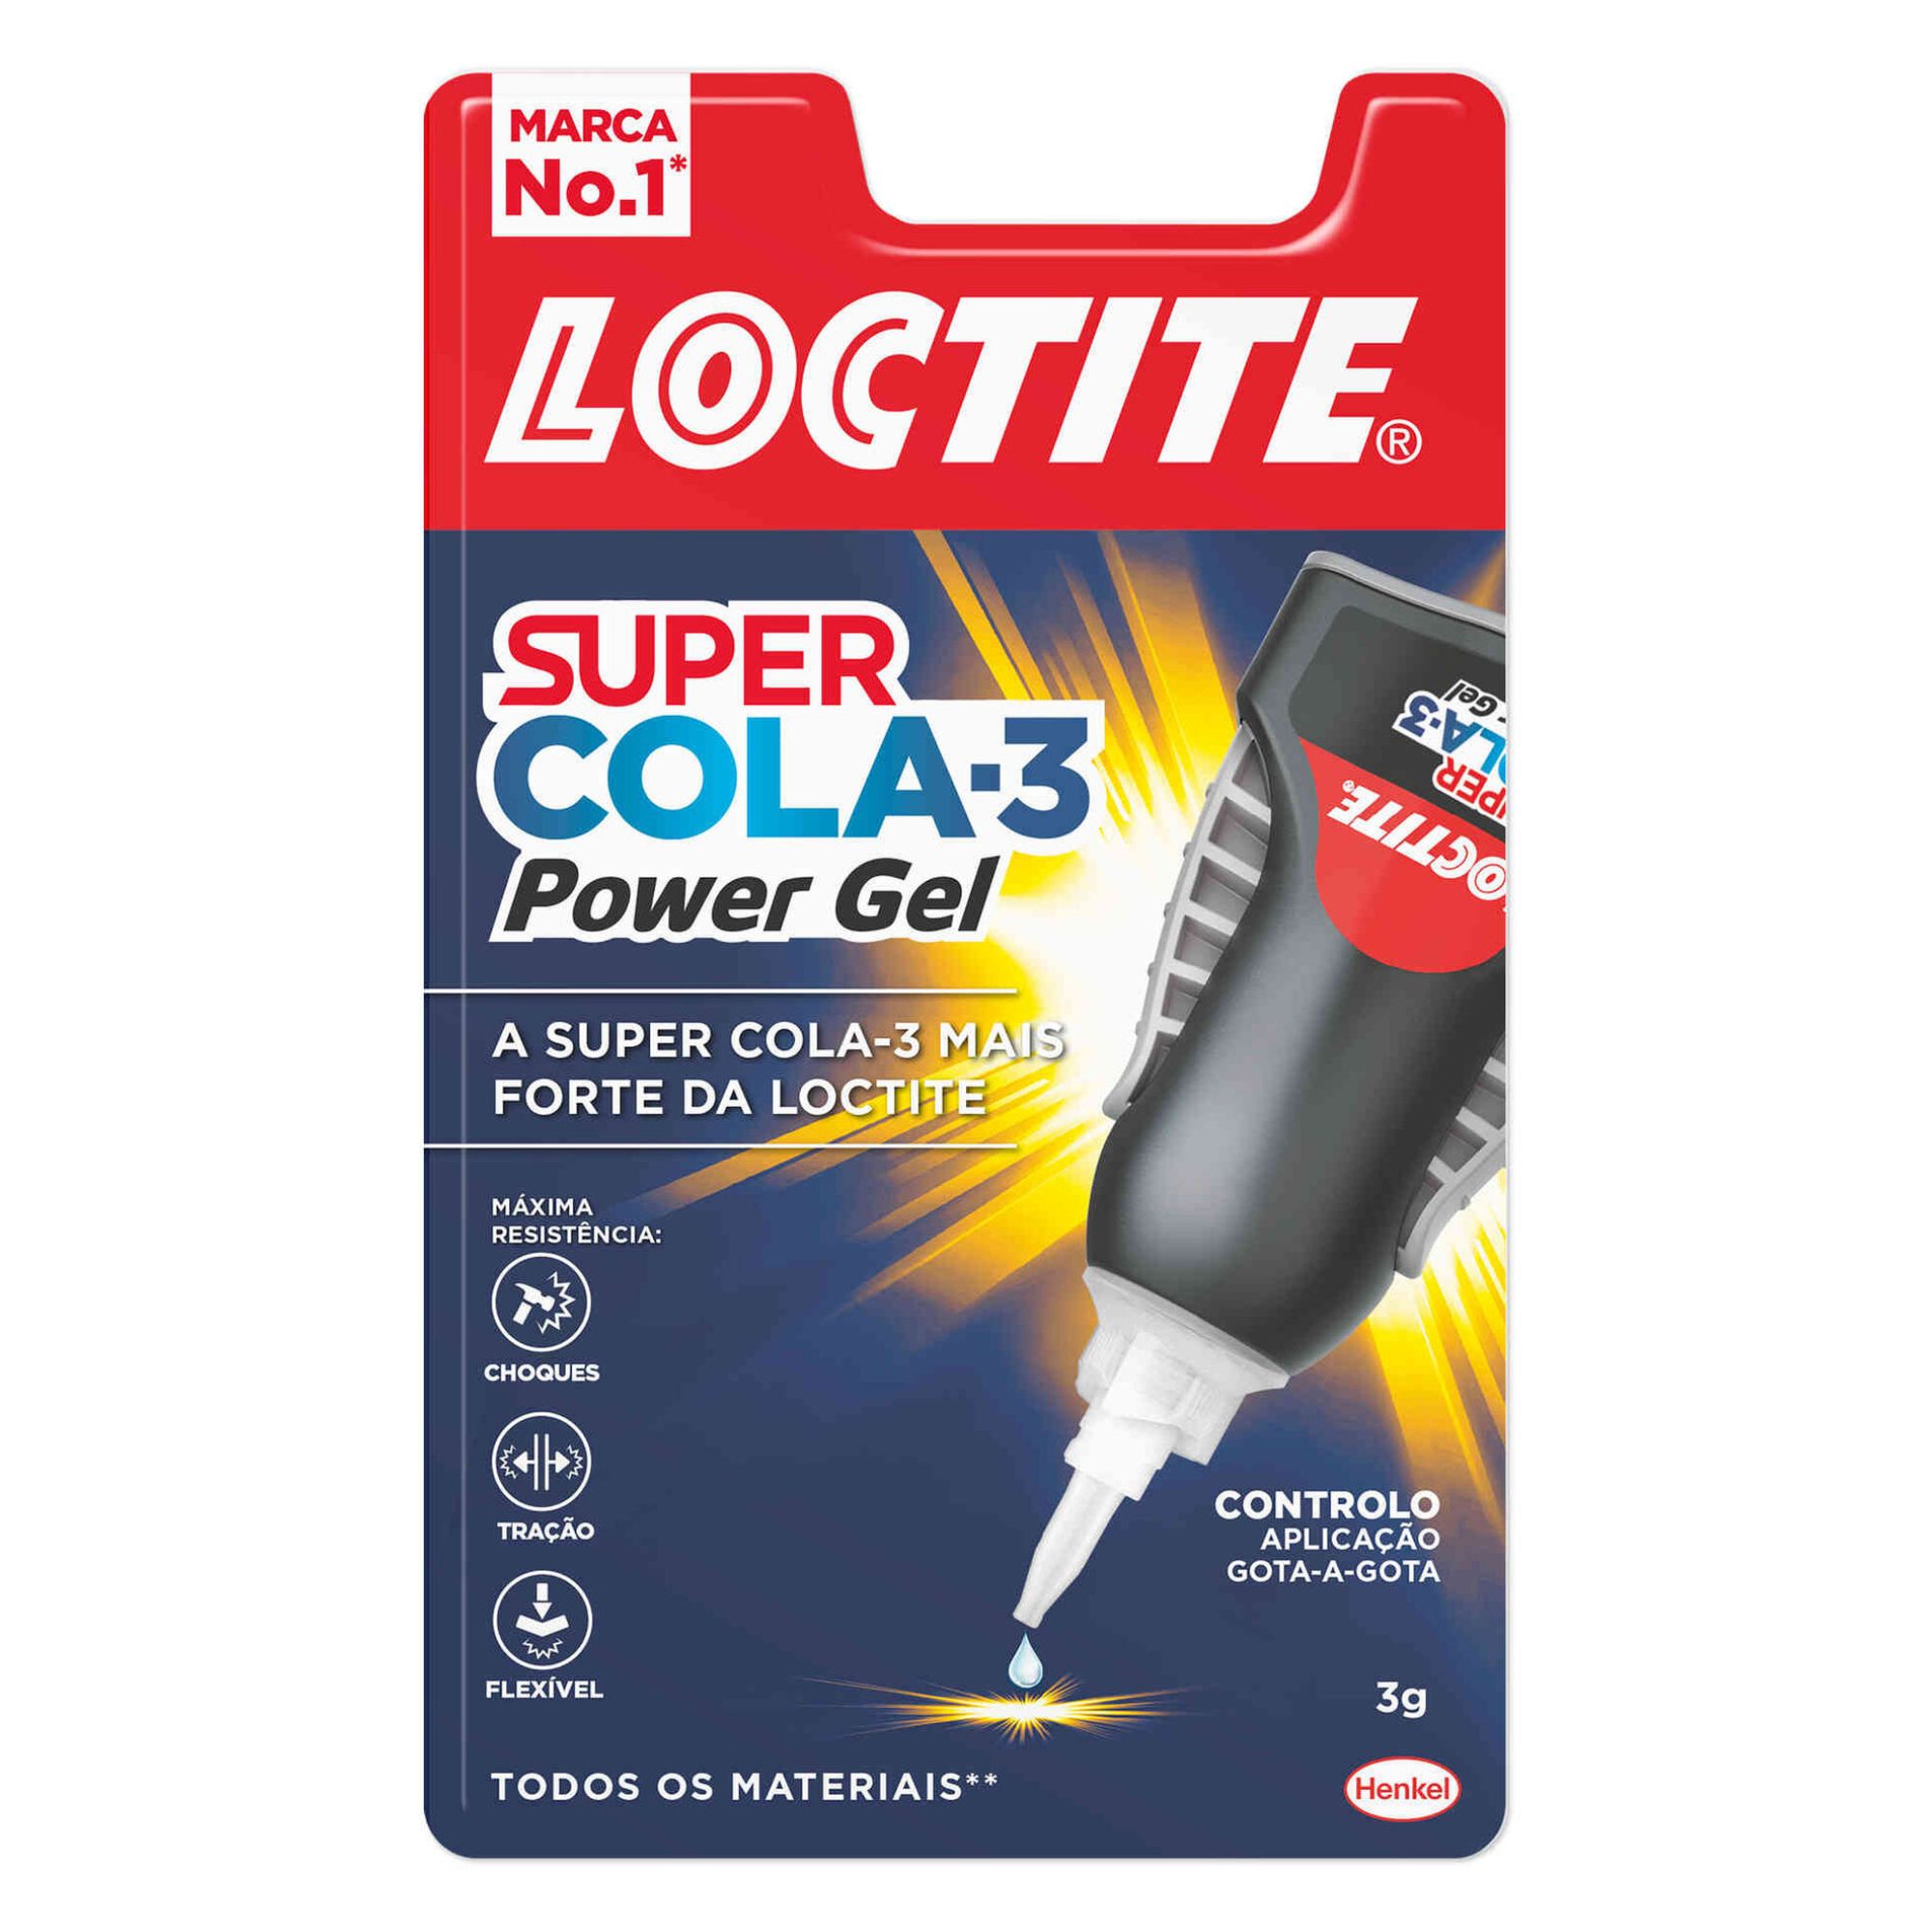 LOCTITE SUPER COLA 3 - 3g POWERFLEX CONTROL BLISTER